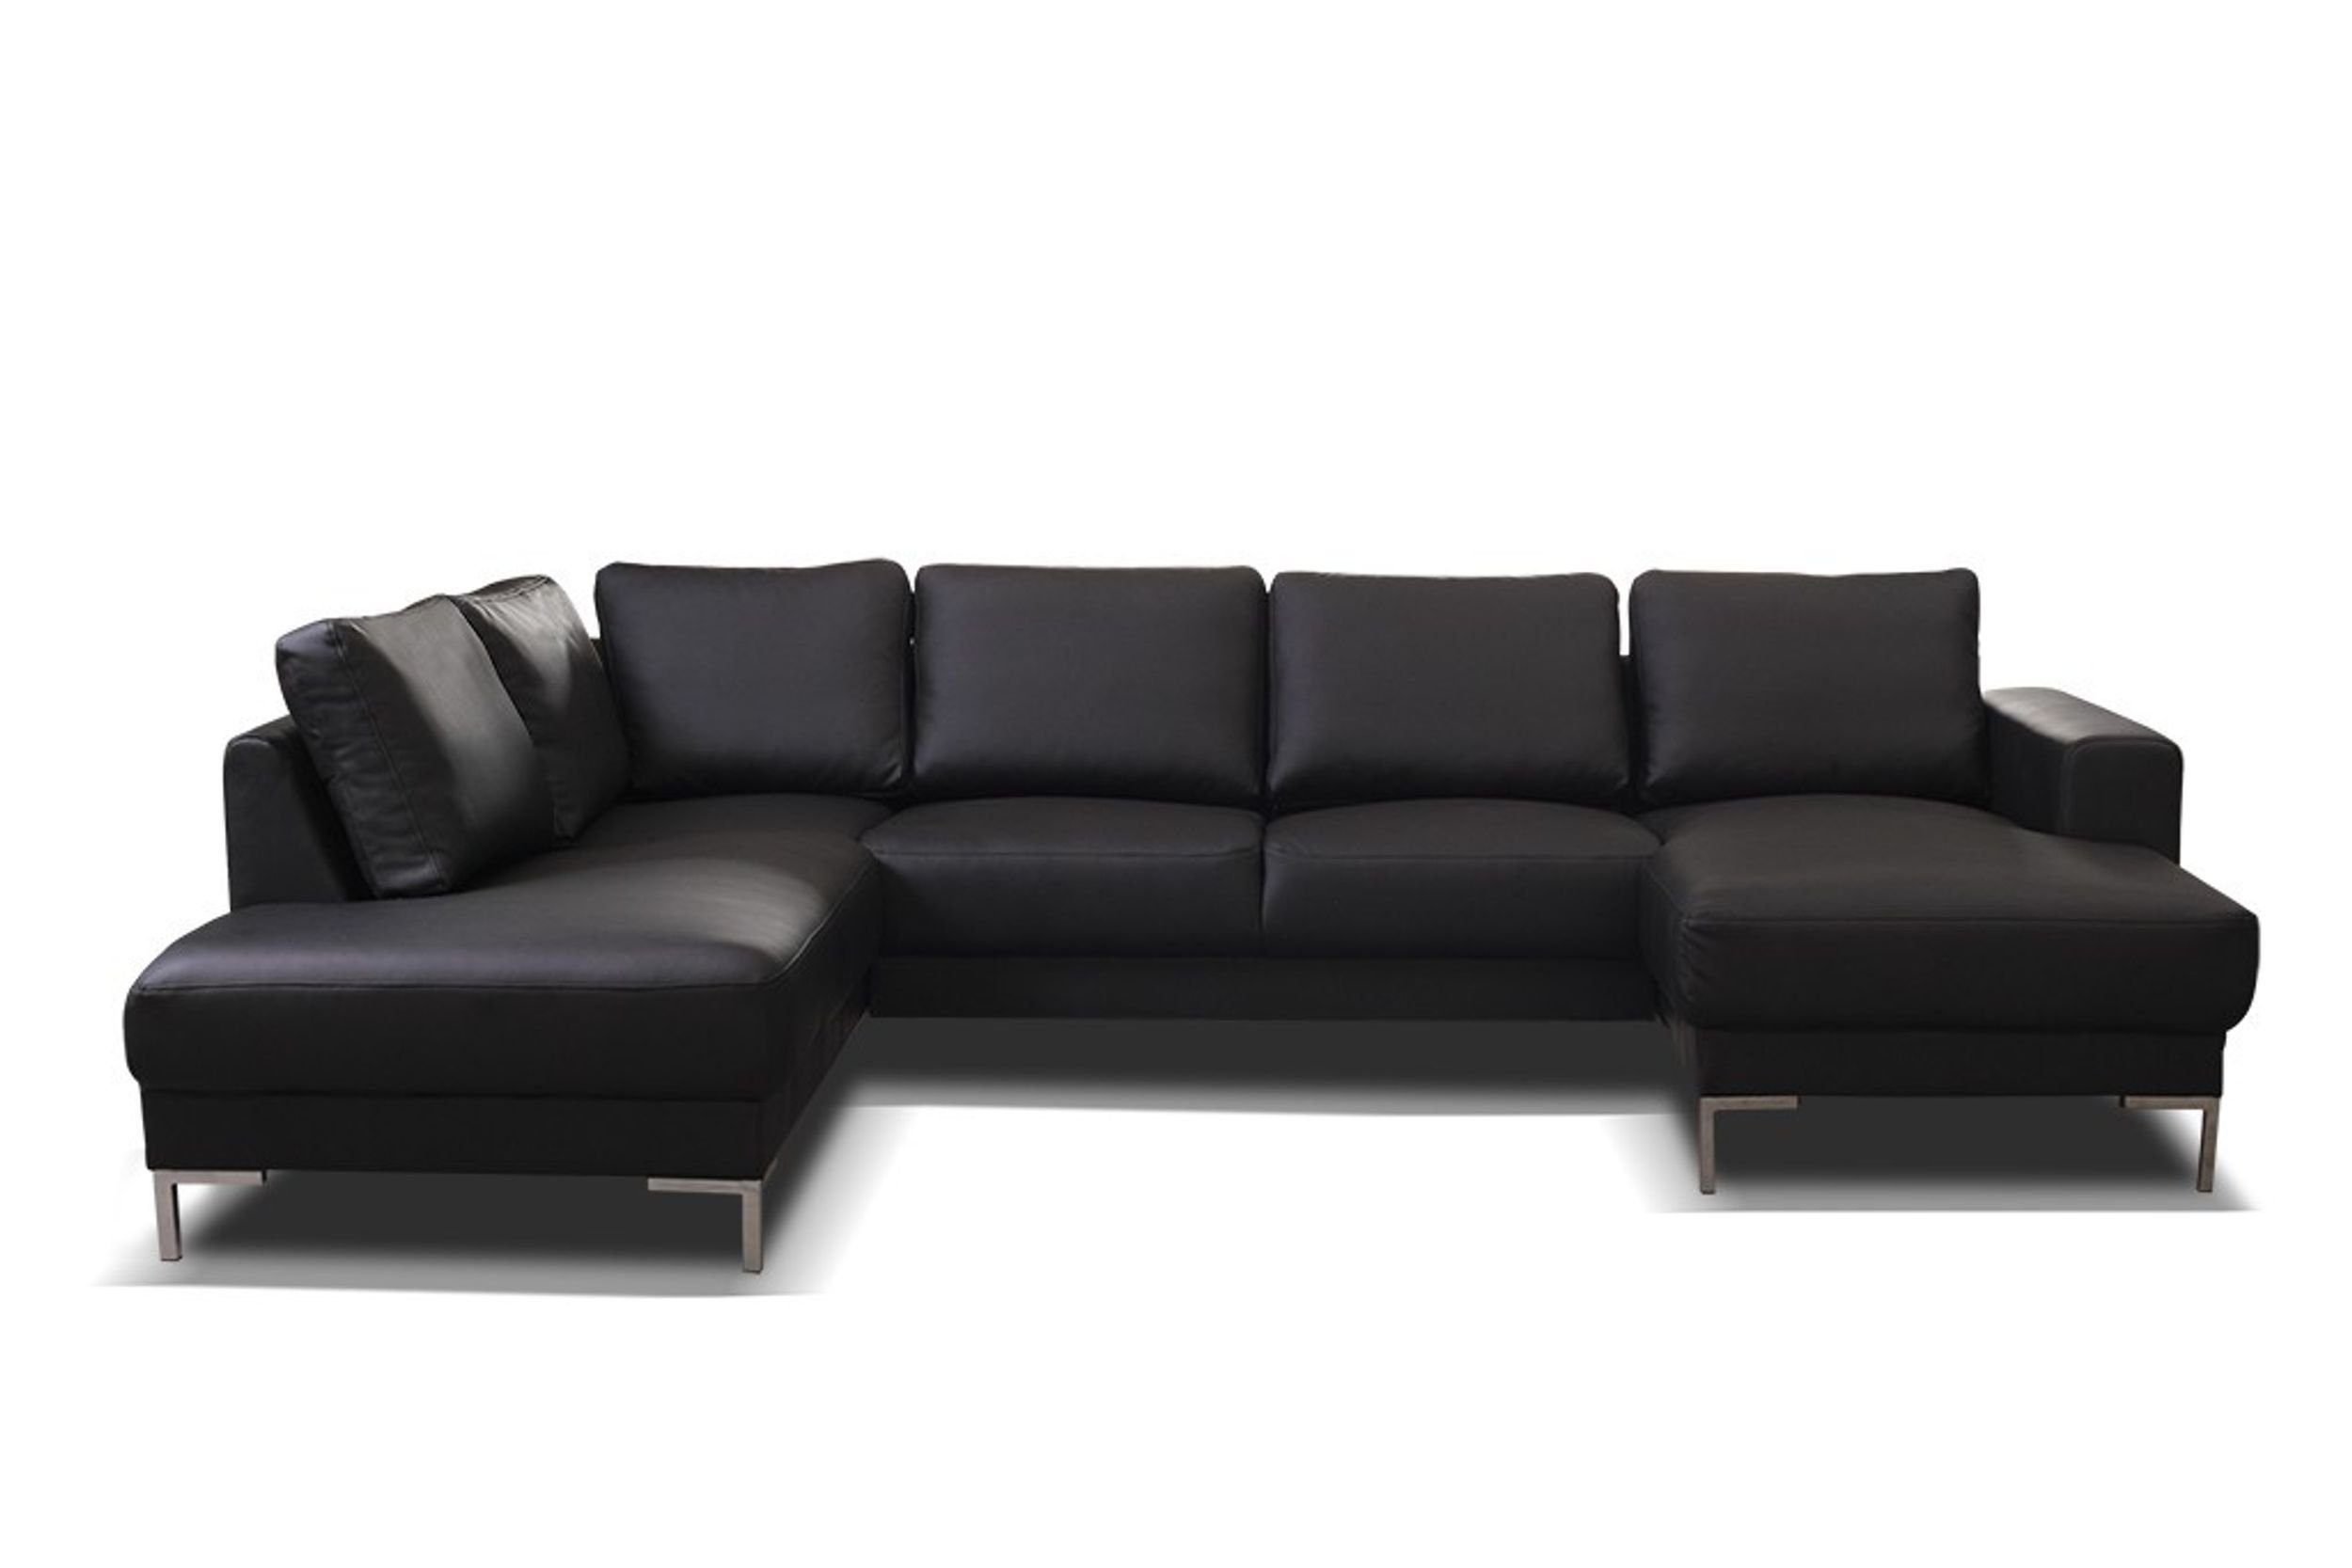 XXL, Wohnlandschaft Eckcouch in Ecksofa schwarz SILVIO Küchen-Preisbombe Sofa U-Form Kunstleder Sofa Couch